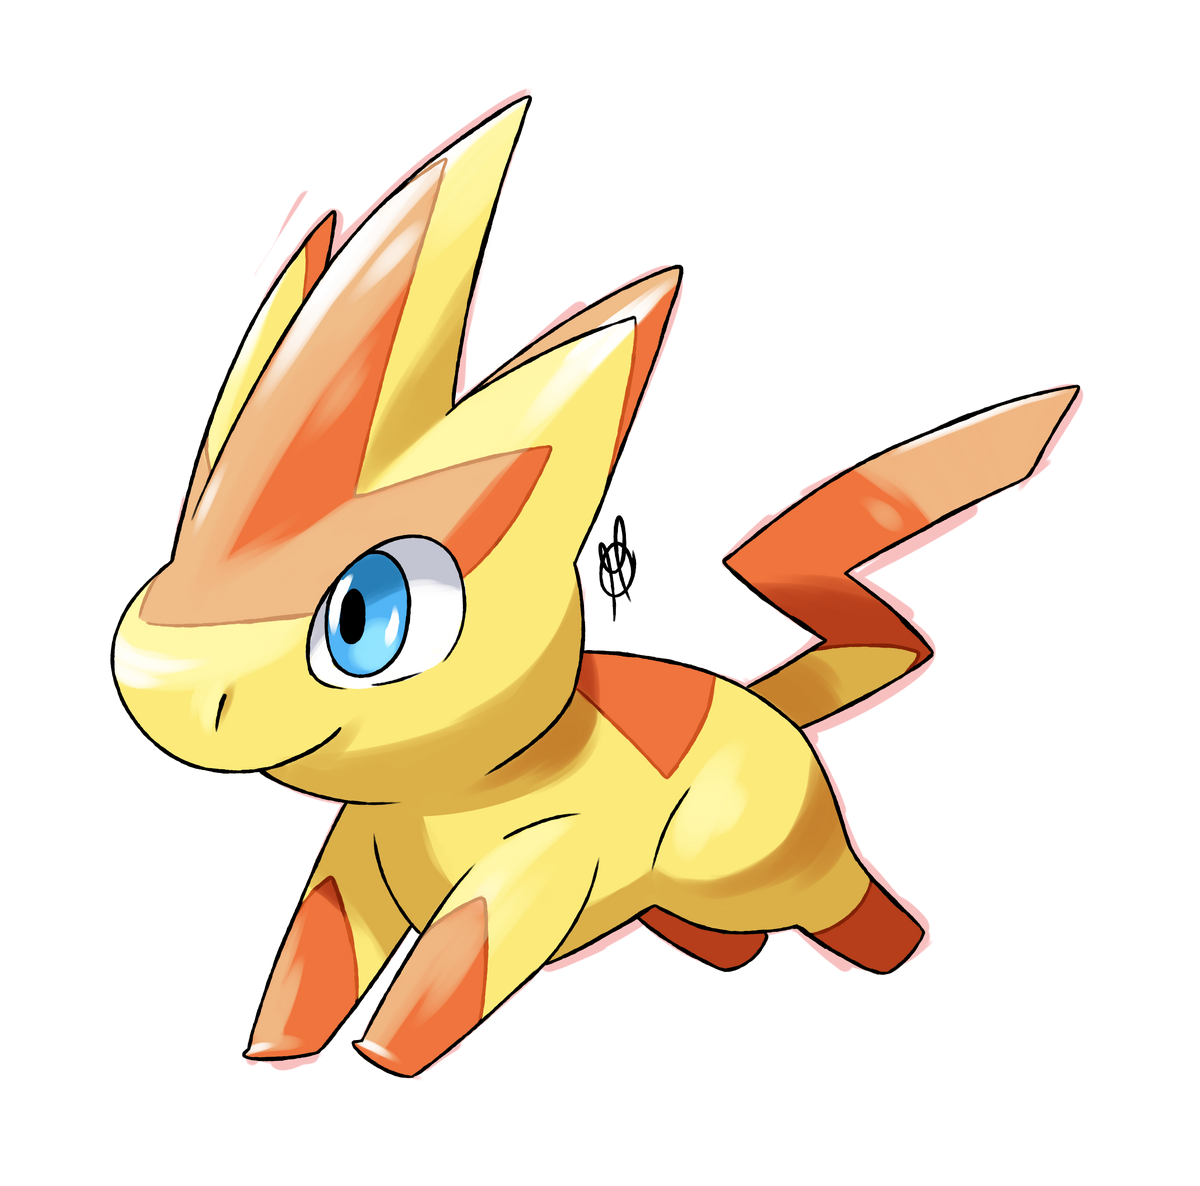 Spin2Win - Pokémon Vortex Wiki